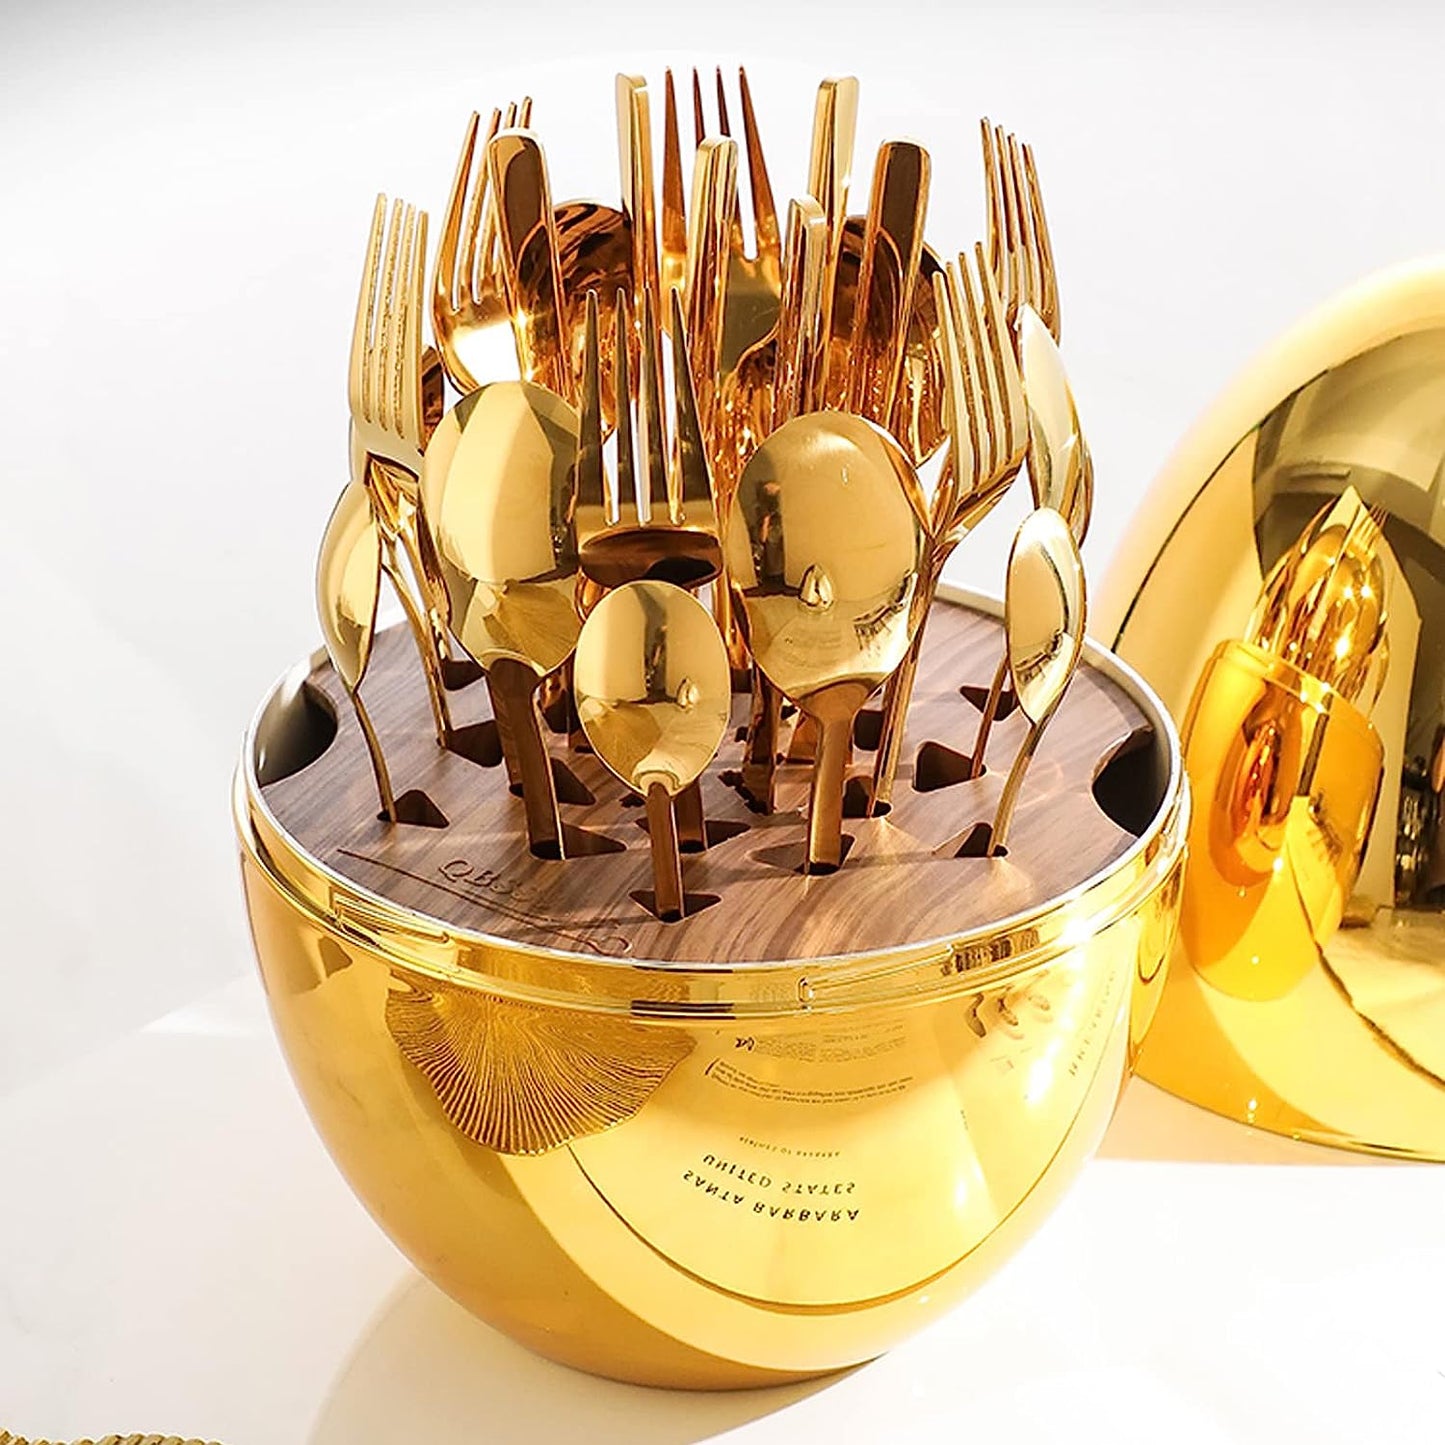 Couverts de luxe en forme d'œuf 24 pièces - PixaMaoc 